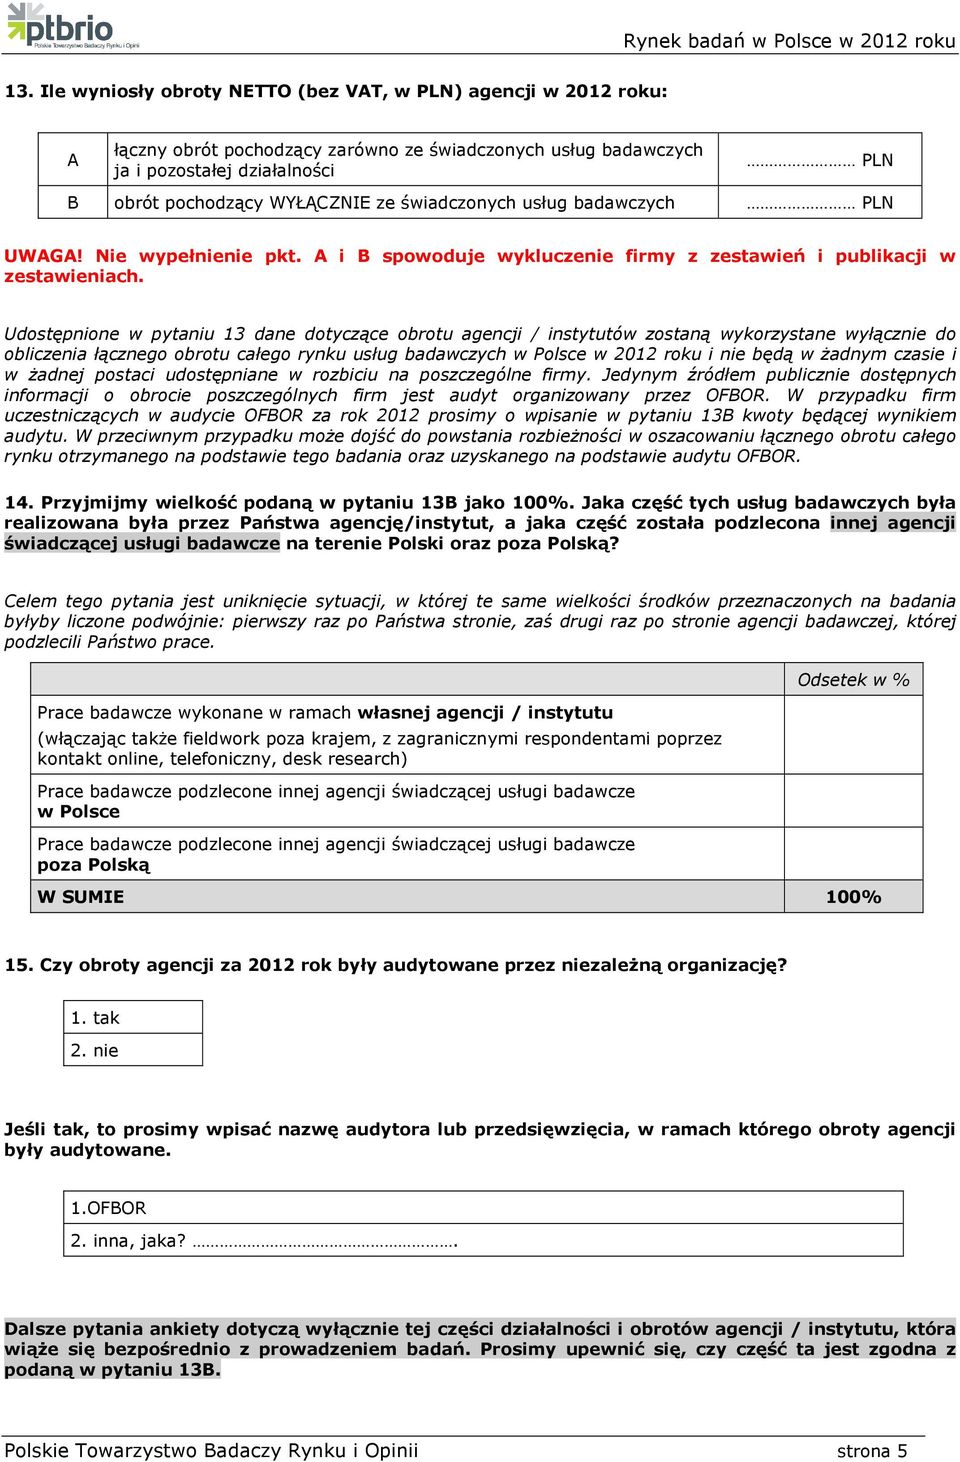 Udostępnione w pytaniu 13 dane dotyczące obrotu agencji / instytutów zostaną wykorzystane wyłącznie do obliczenia łącznego obrotu całego rynku usług badawczych w Polsce w 2012 roku i nie będą w